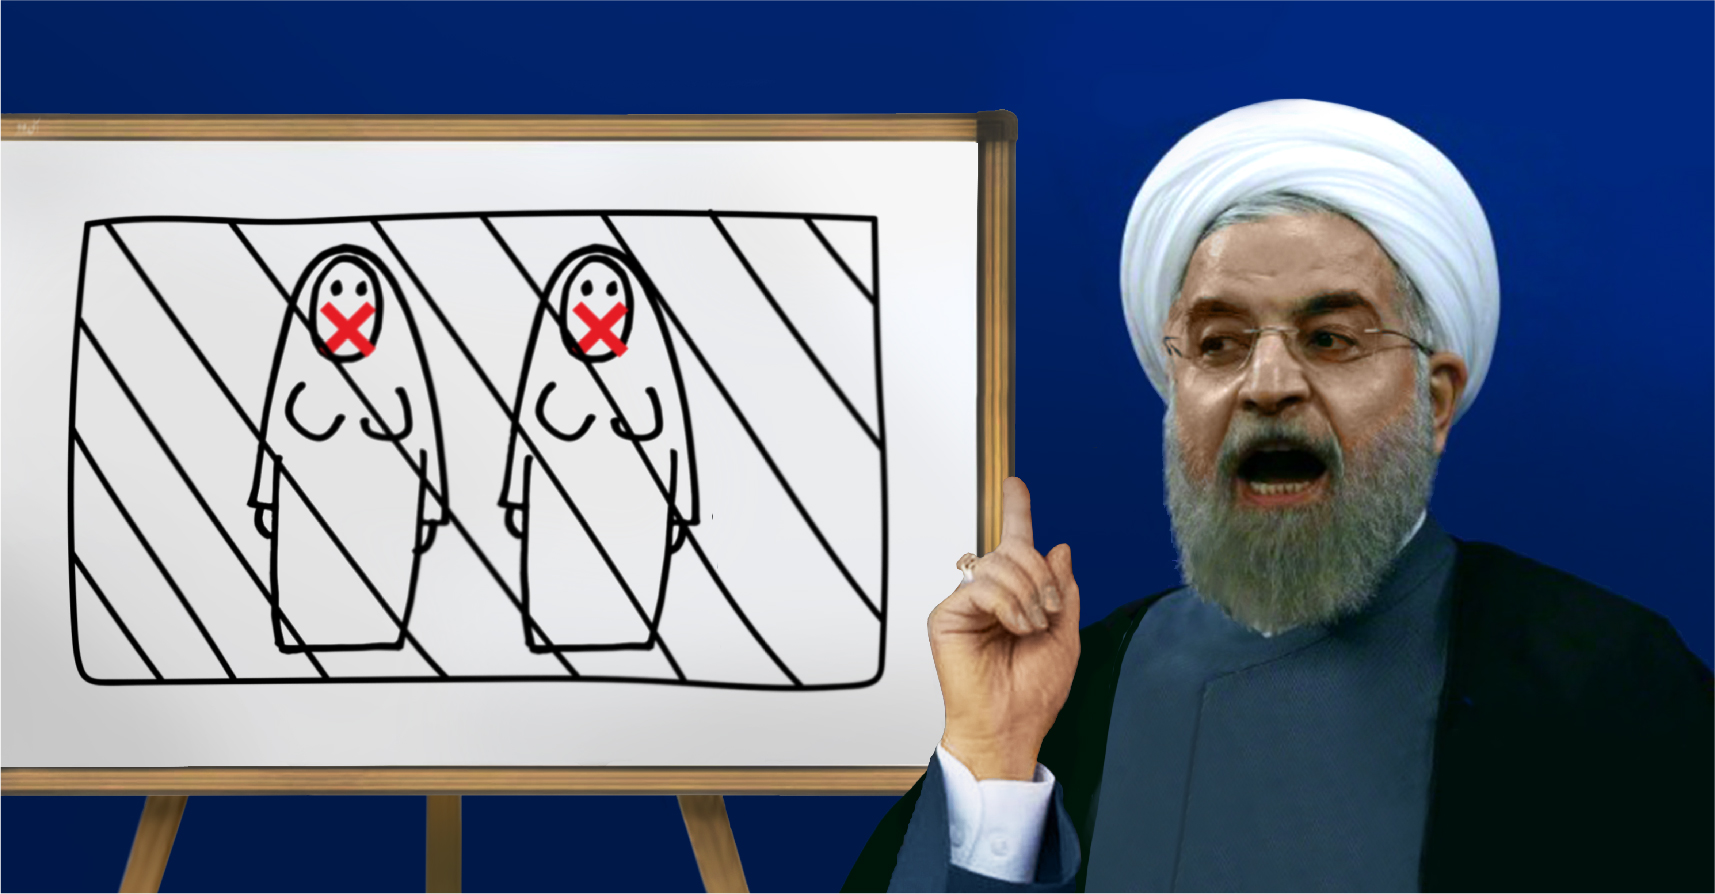 صورة روحاني يعين امرأتين في حكومته شرط أن تقرّا بيتيهما ولا تتكلمان إلا من وراء حجاب وبإذنه